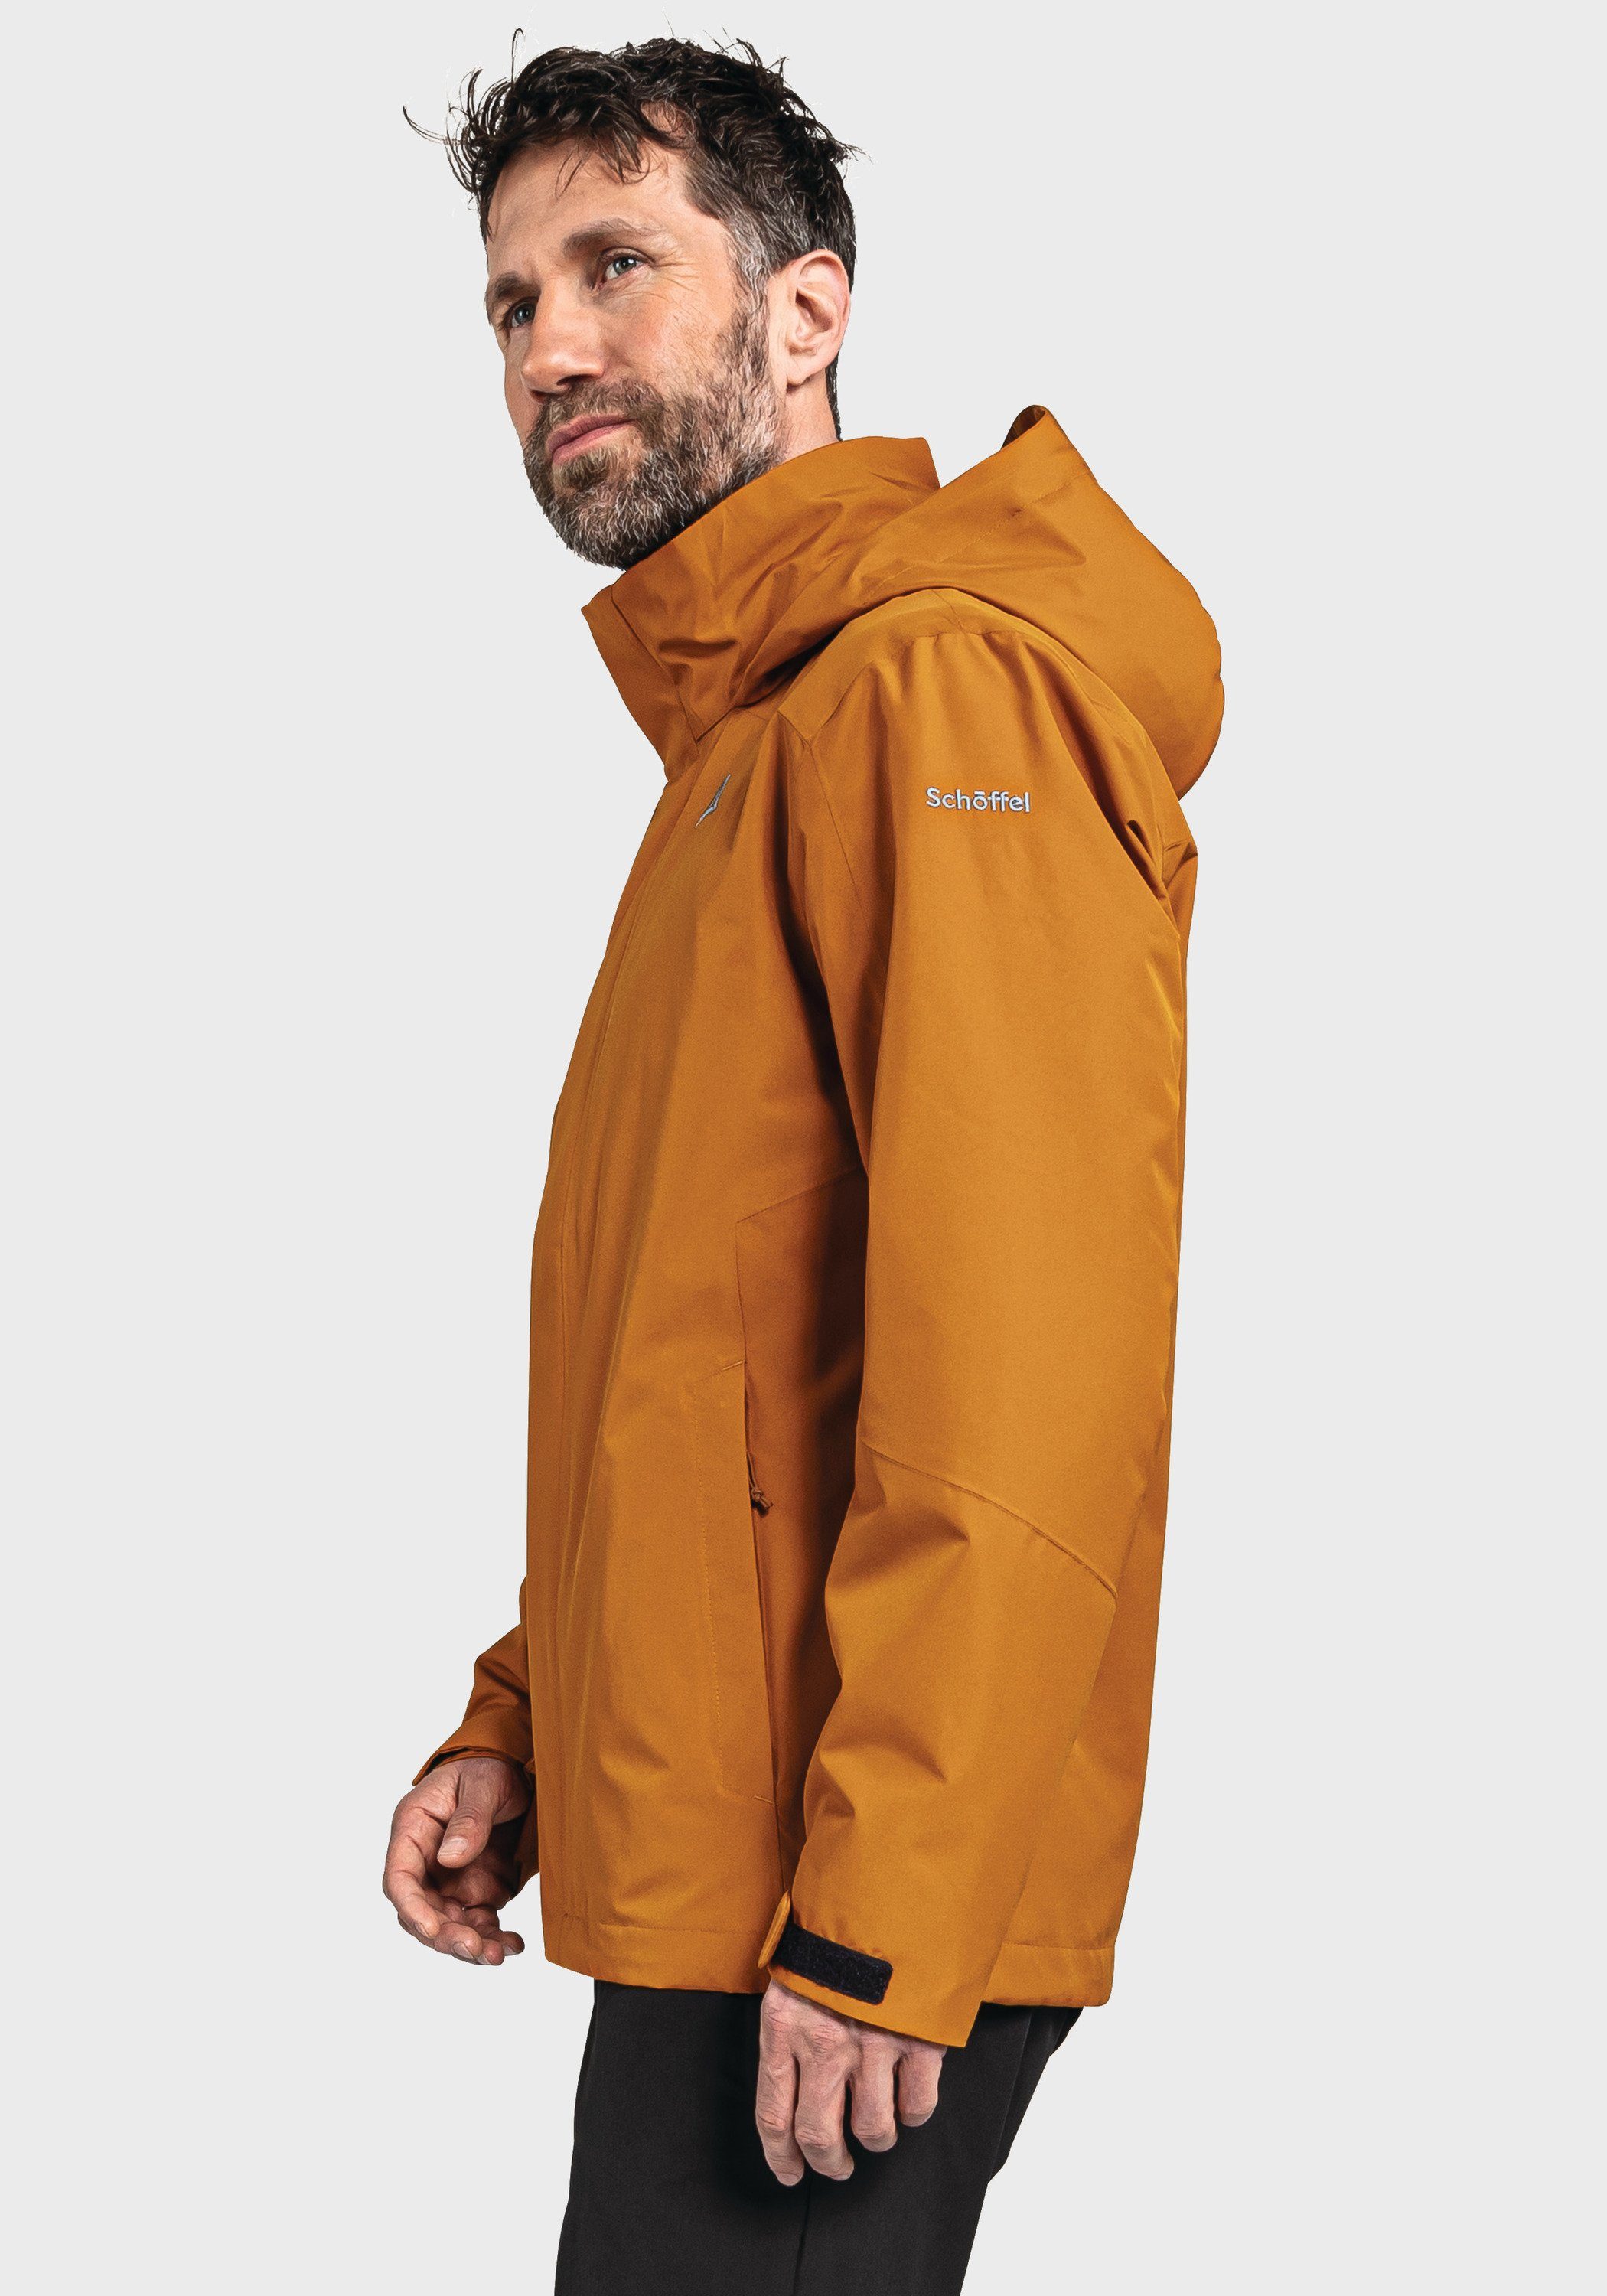 M orange Schöffel Partinello Doppeljacke 3in1 Jacket